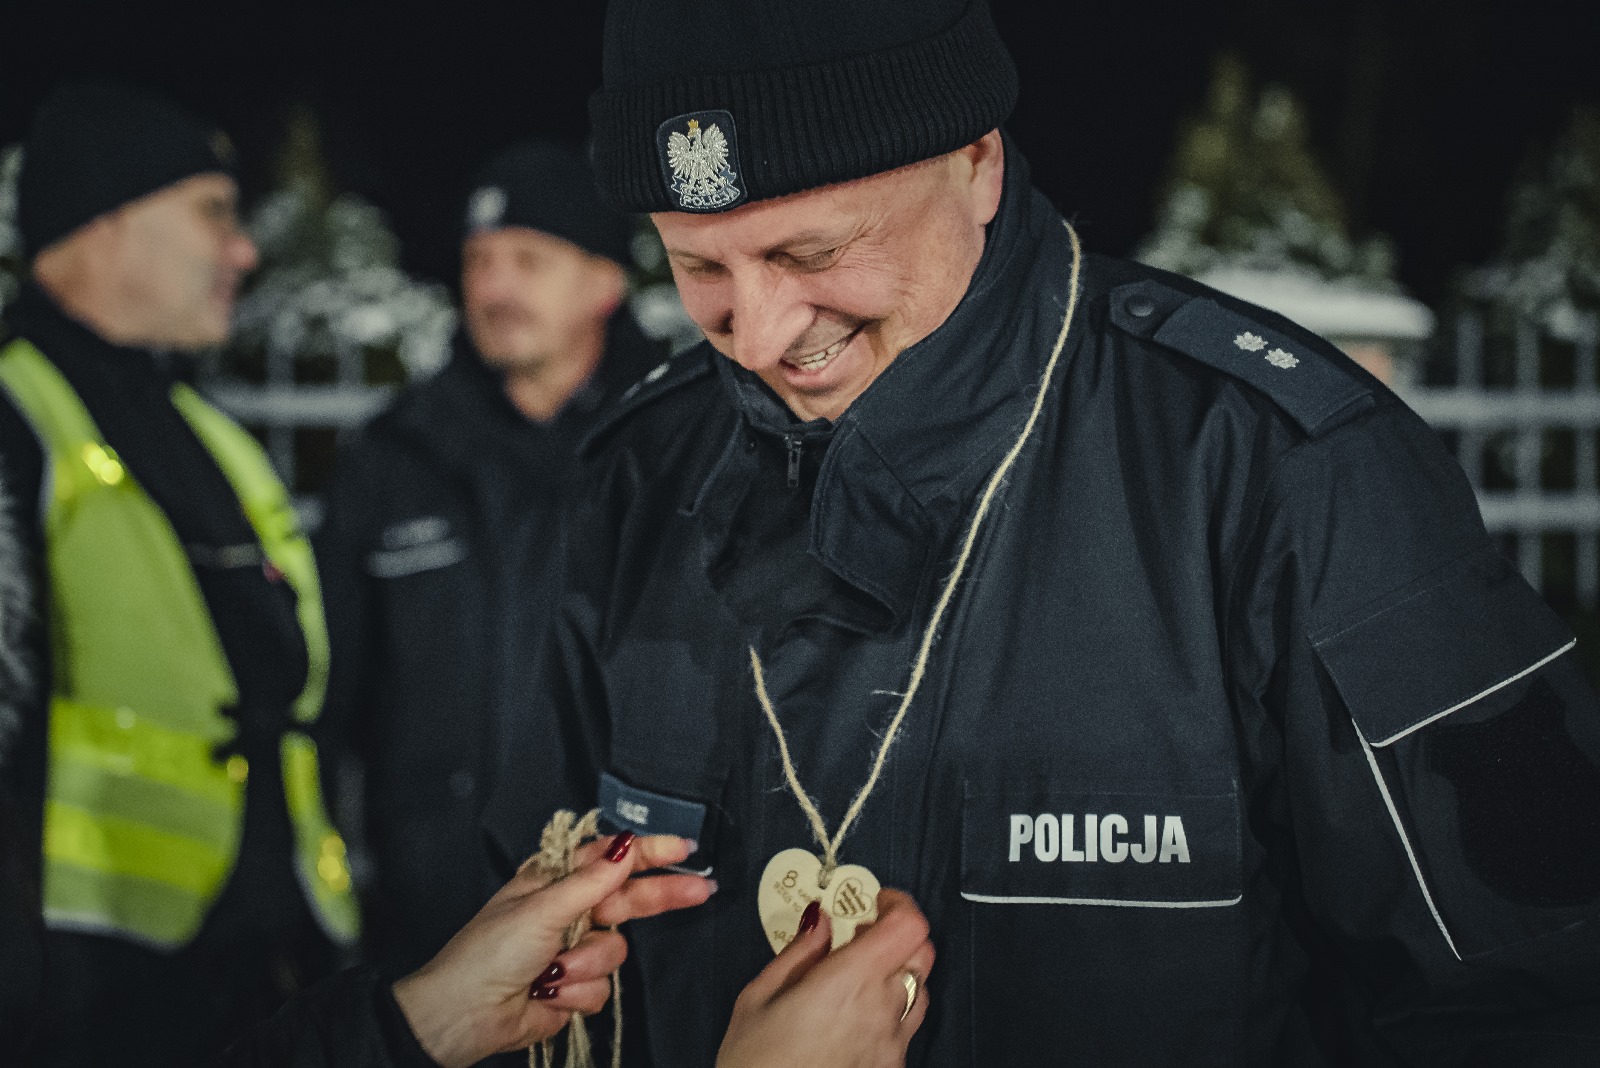 Policjant otrzymujący medal